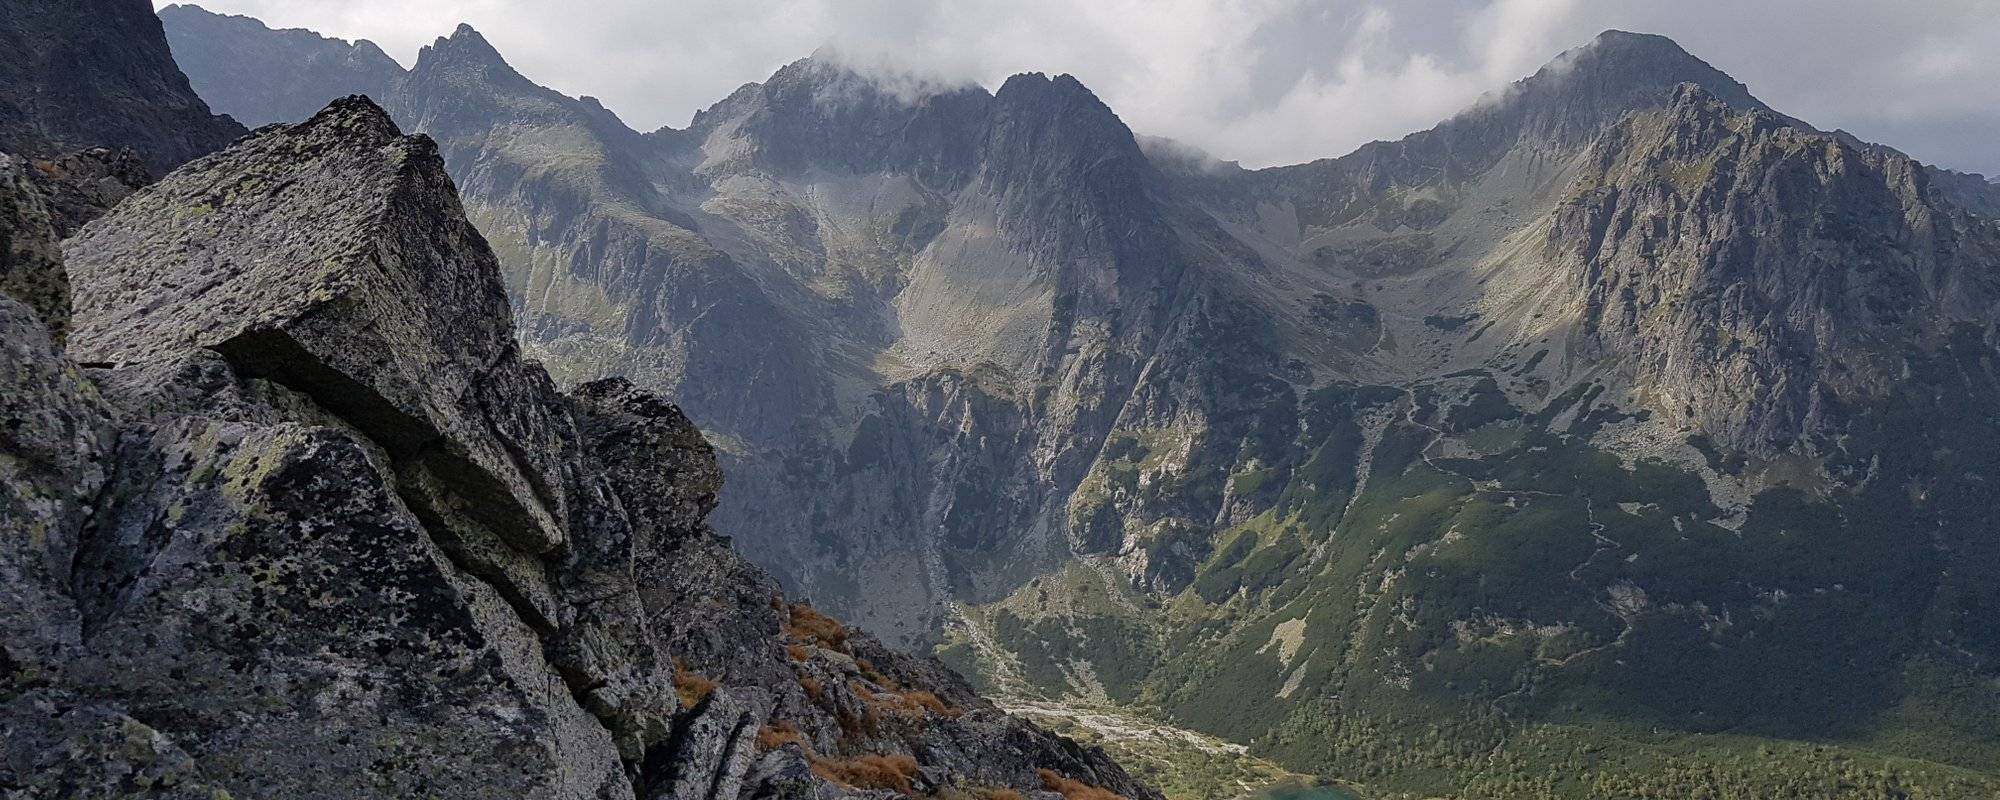 High Tatra Mountains in Slovakia